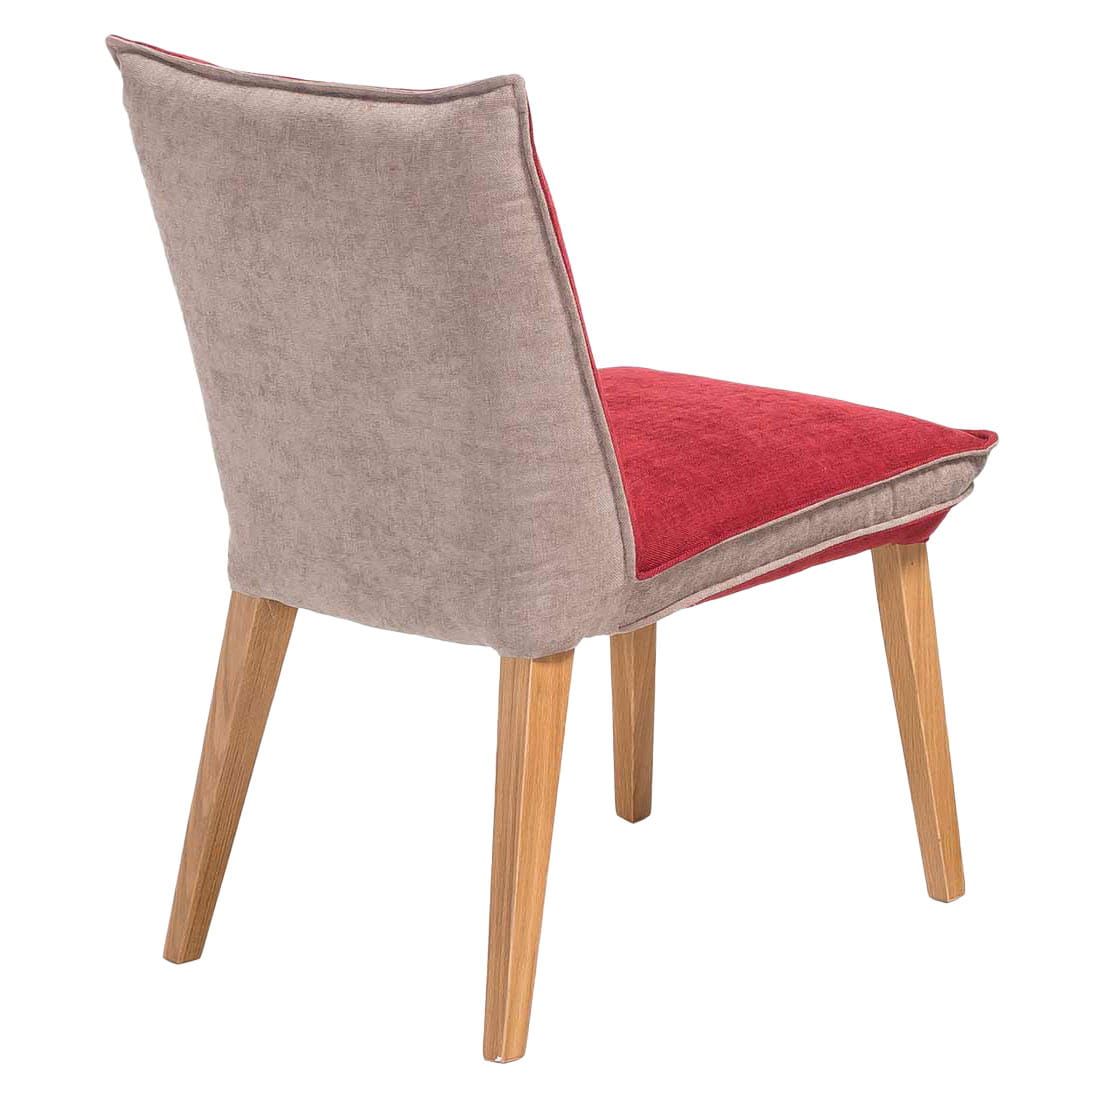 Standard Furniture Genua Stuhl Rot/Beige/Eiche Natur